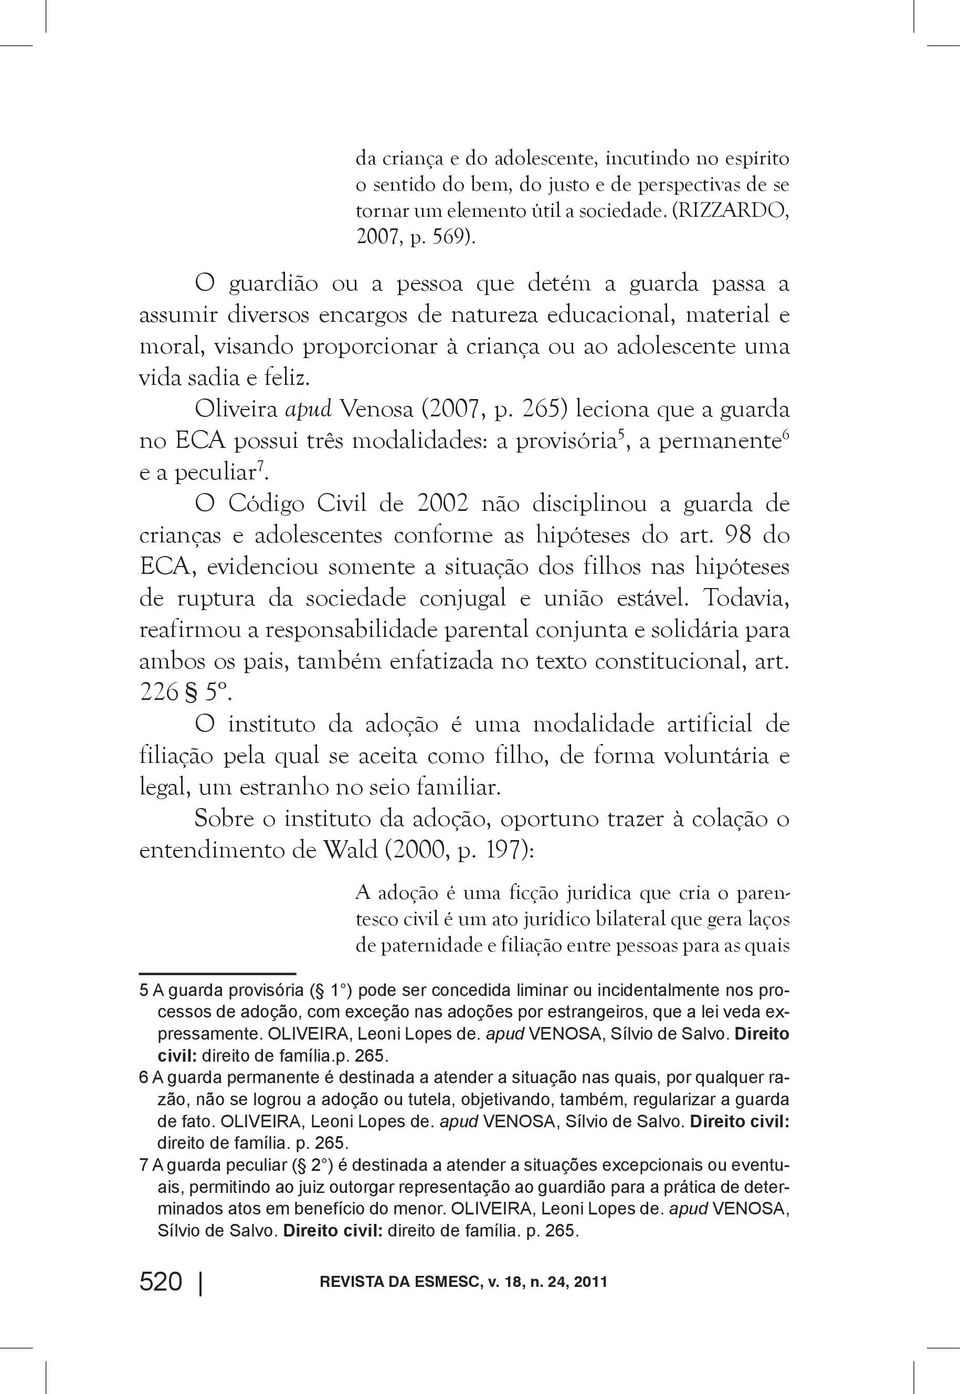 Oliveira apud Venosa (2007, p. 265) leciona que a guarda no ECA possui três modalidades: a provisória 5, a permanente 6 e a peculiar 7.